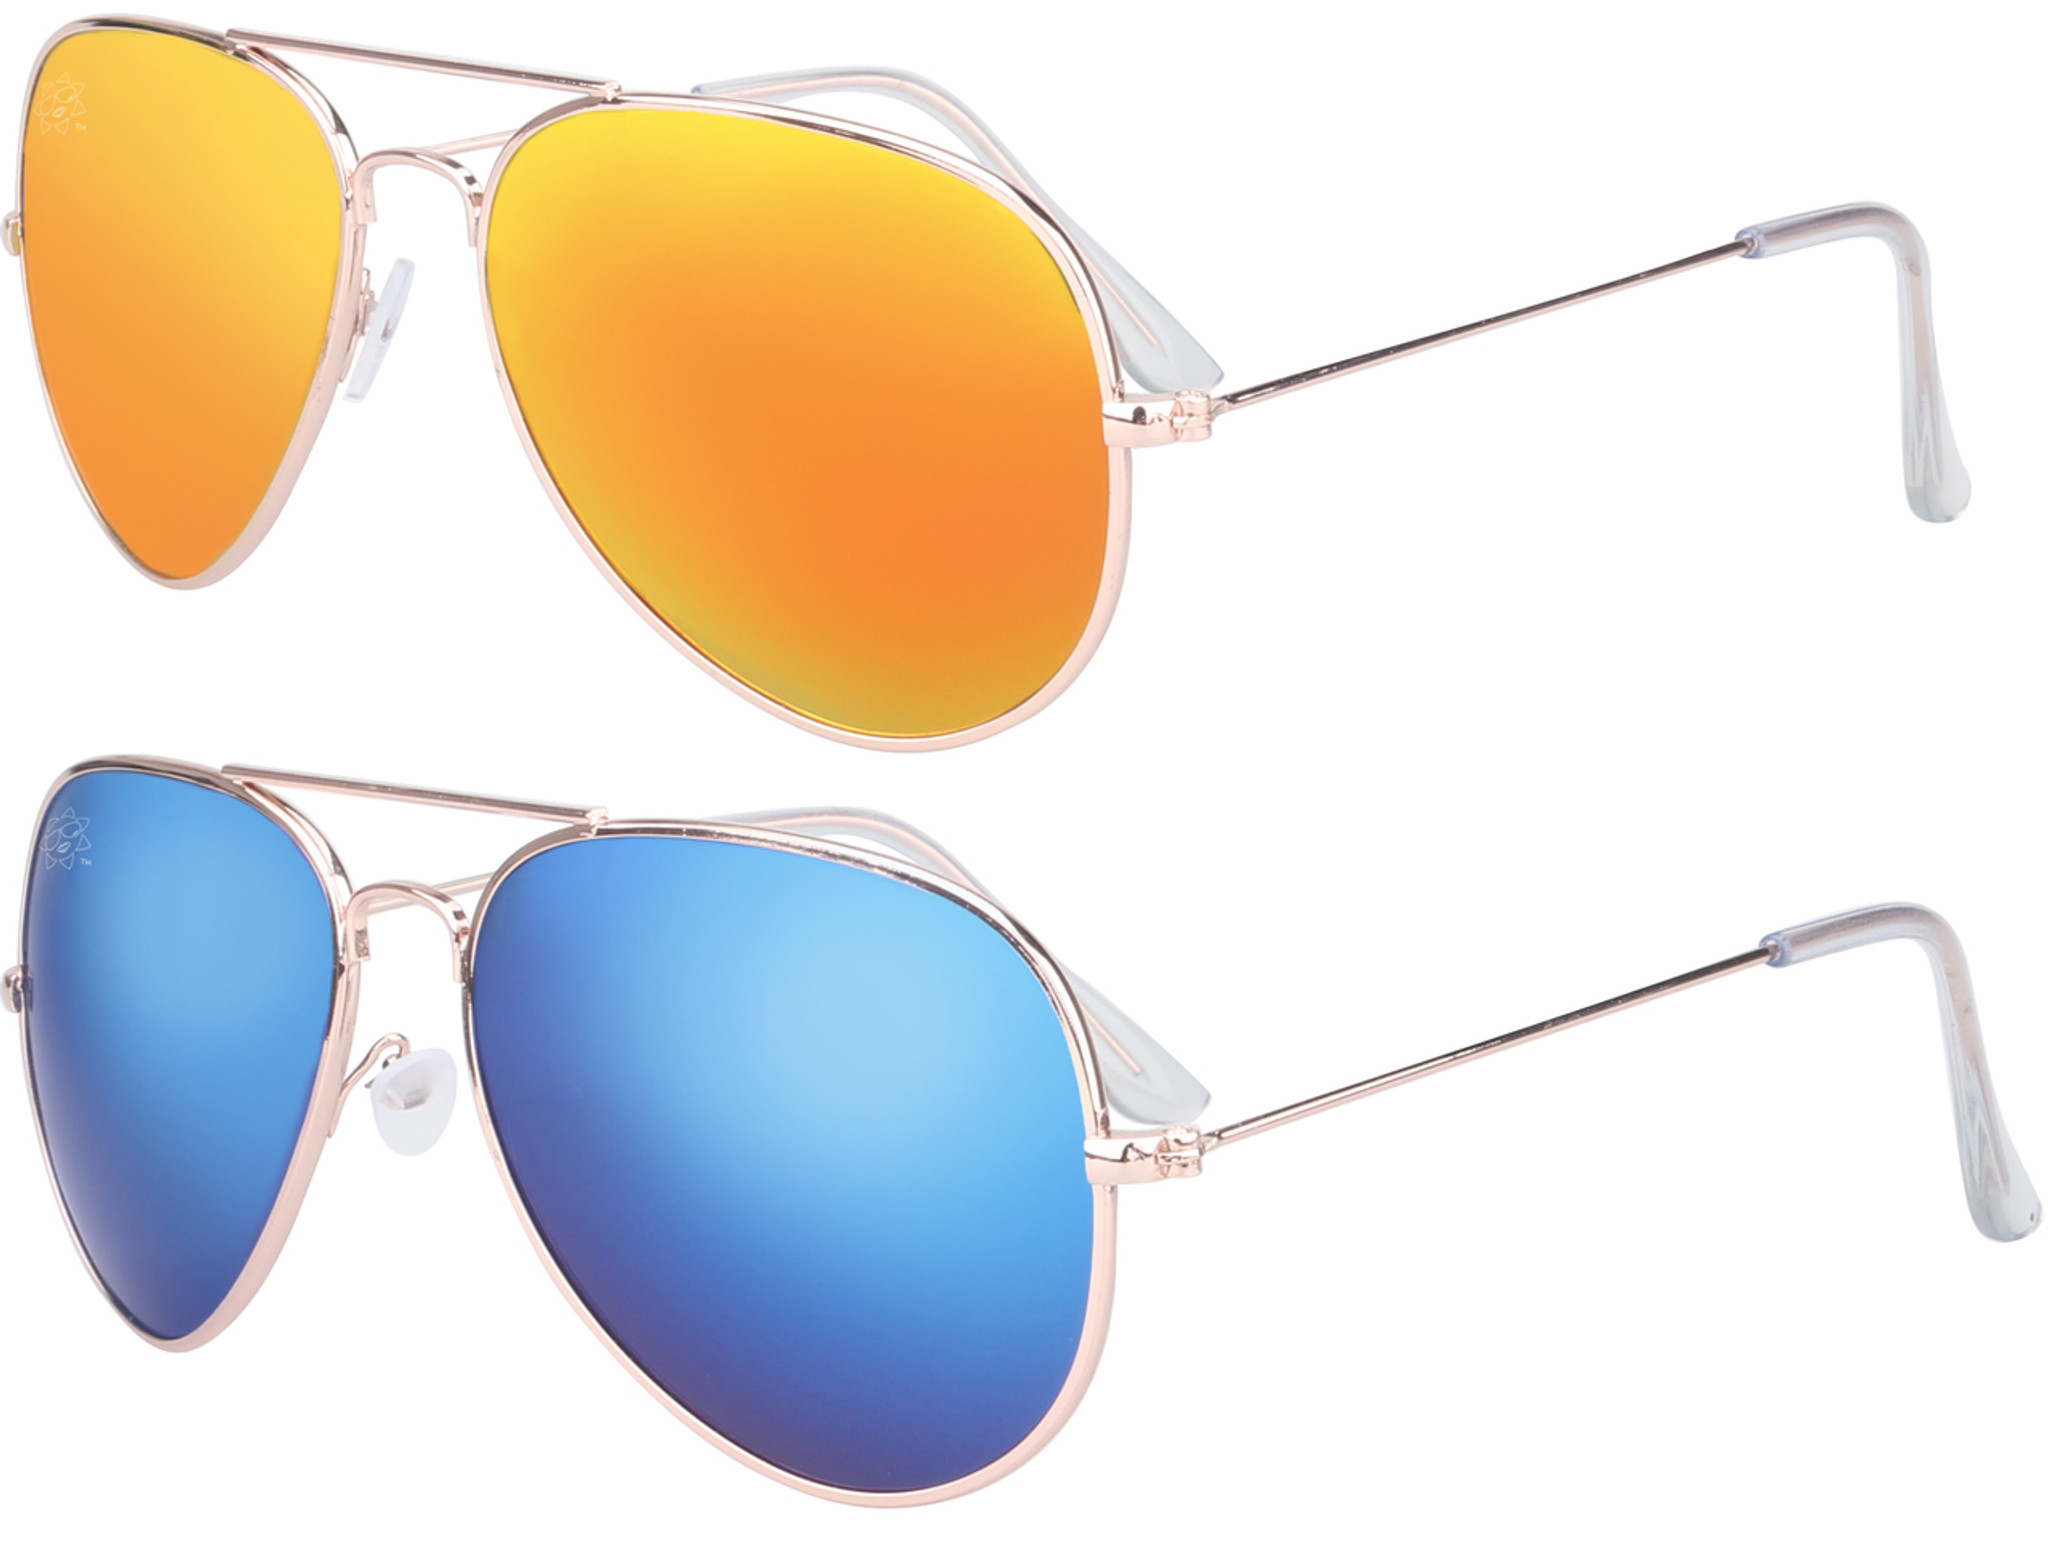 Buy Resist Aviator Sunglasses Brown, Golden For Men & Women Online @ Best  Prices in India | Flipkart.com